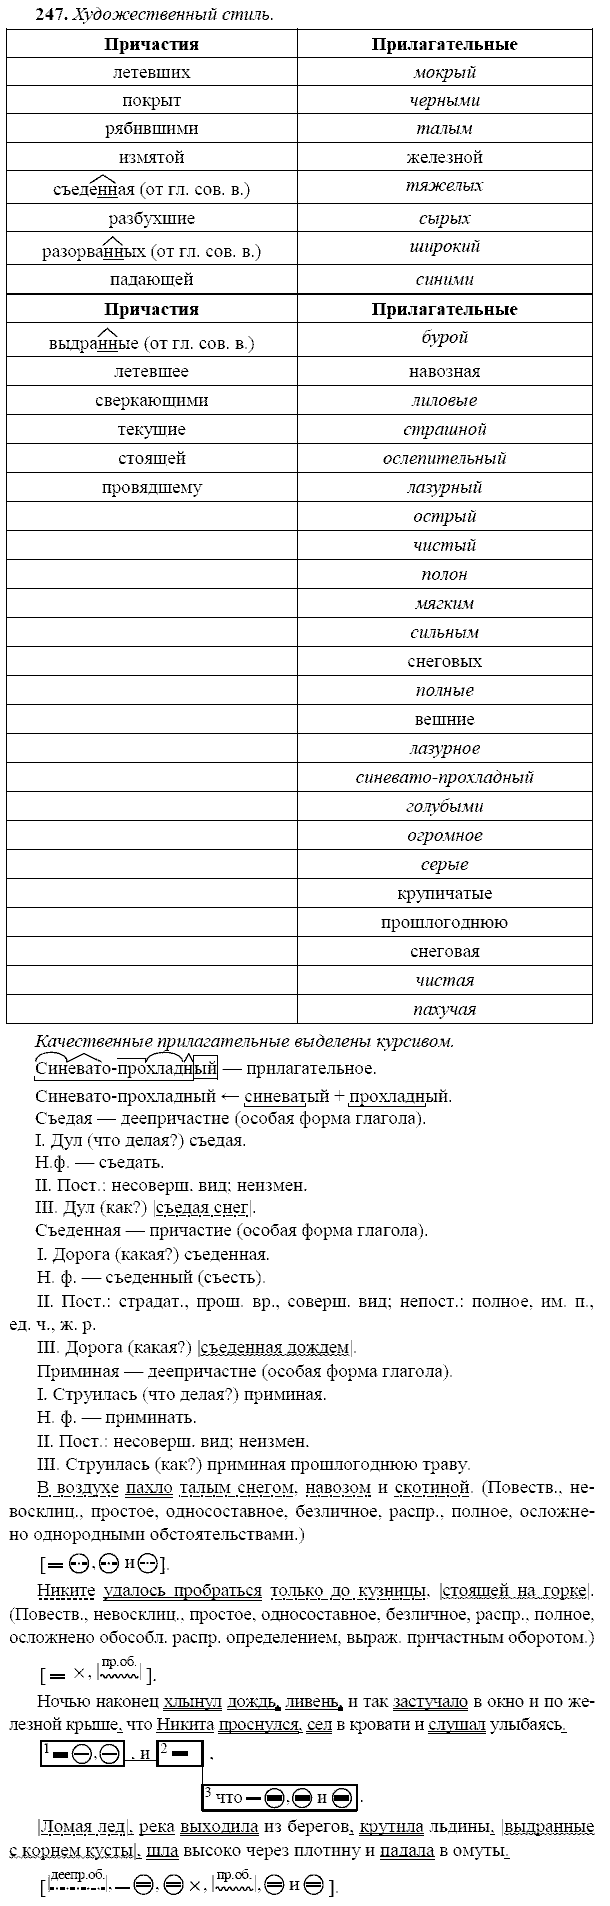 Русский язык, 9 класс, Тростенцова Л.А. Ладыженская Т.А., 2013 - 2015, задание: 247